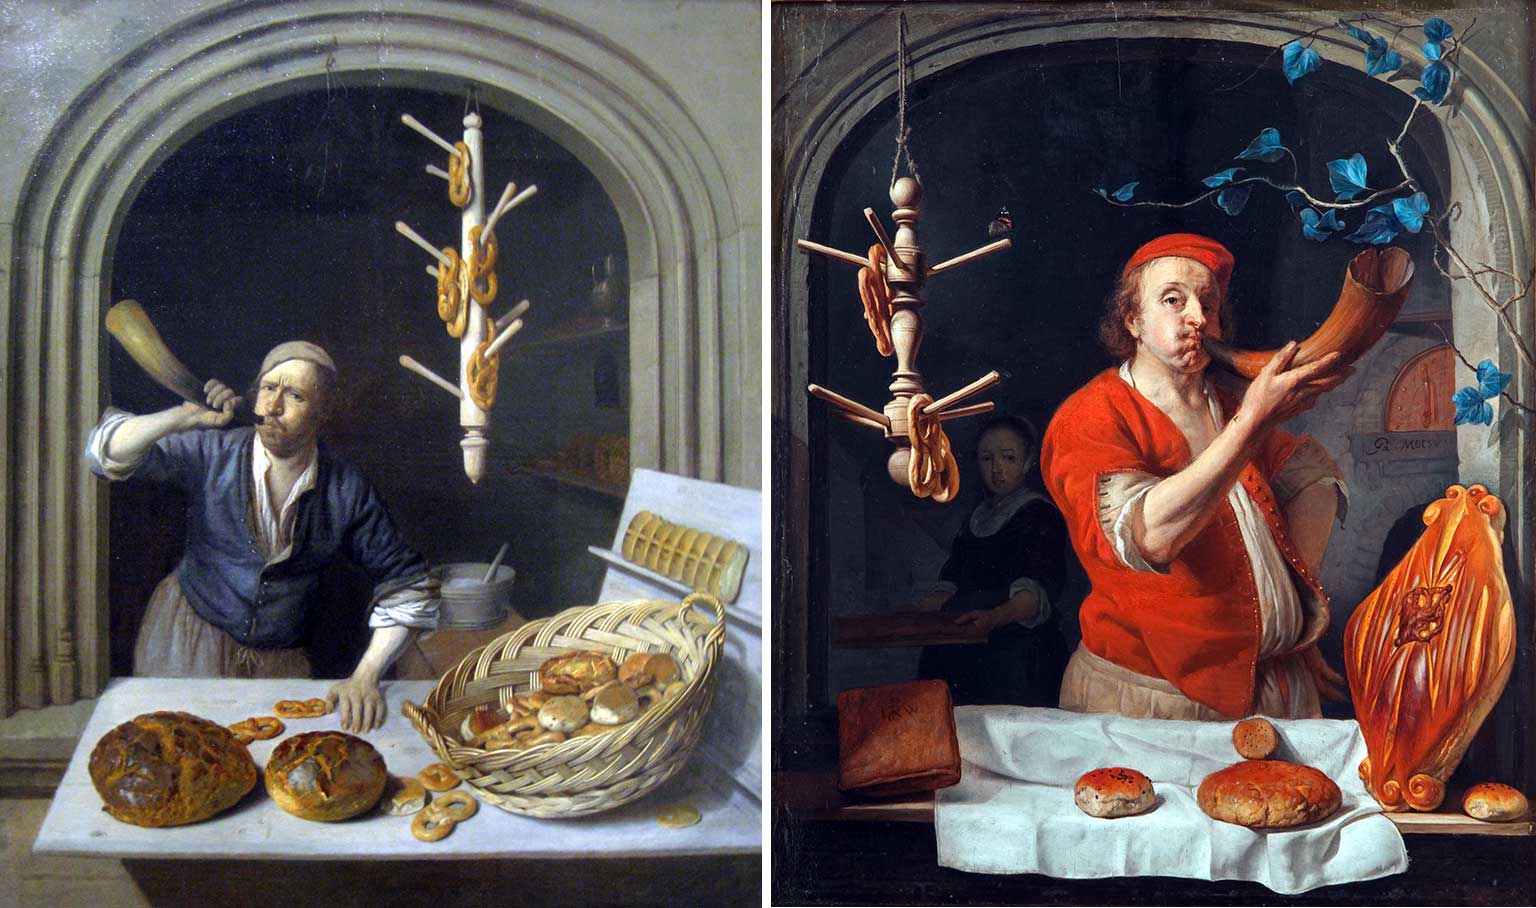 De bakker, schilderij van Job Adriaensz Berckheyde en Bakker met hoorn, schilderij van Gabriël Metsu